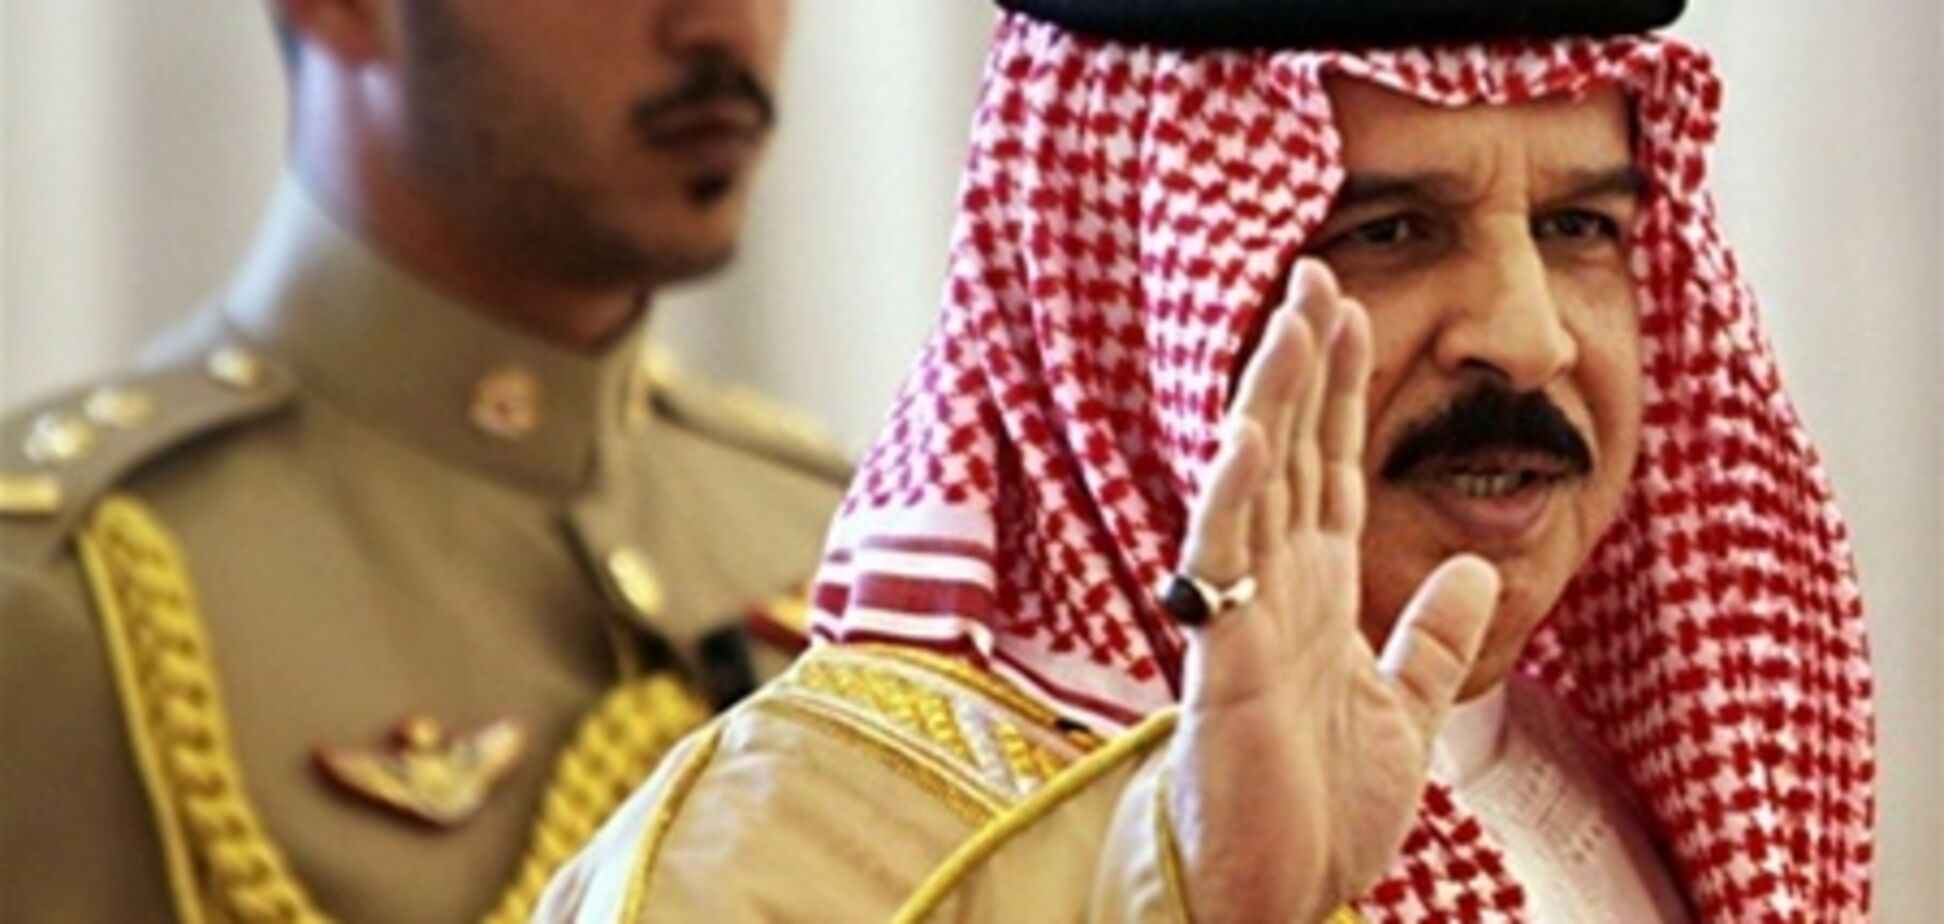 ЗМІ: в Катарі гряде зміна влади